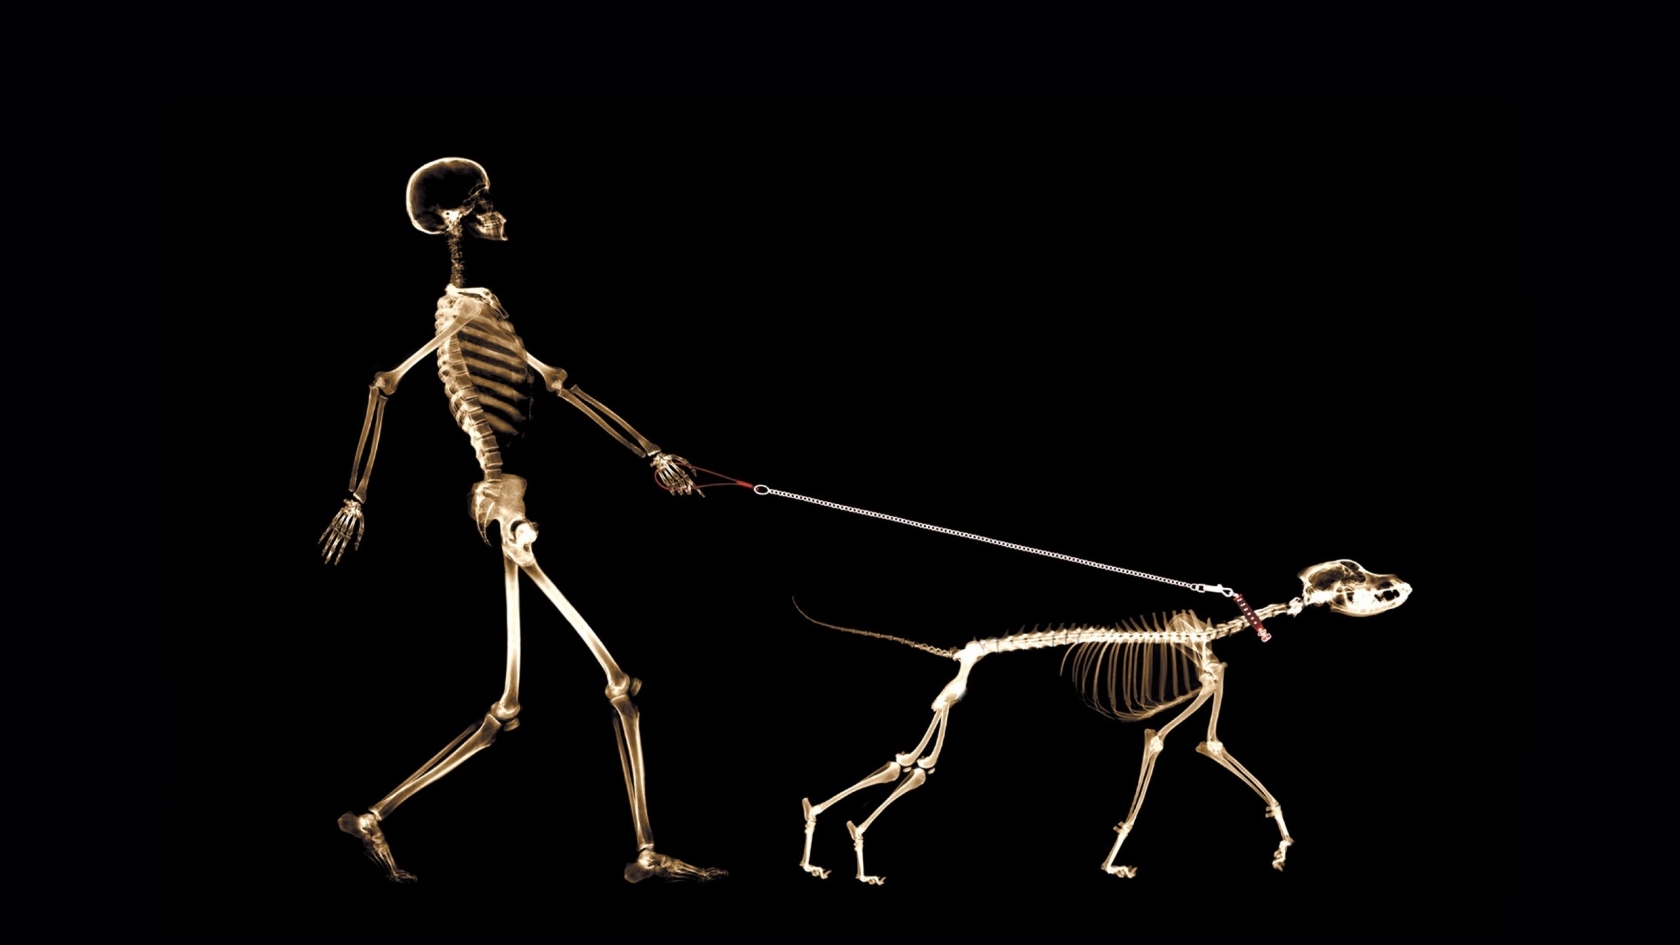 Skeletons Walking for 1680 x 945 HDTV resolution